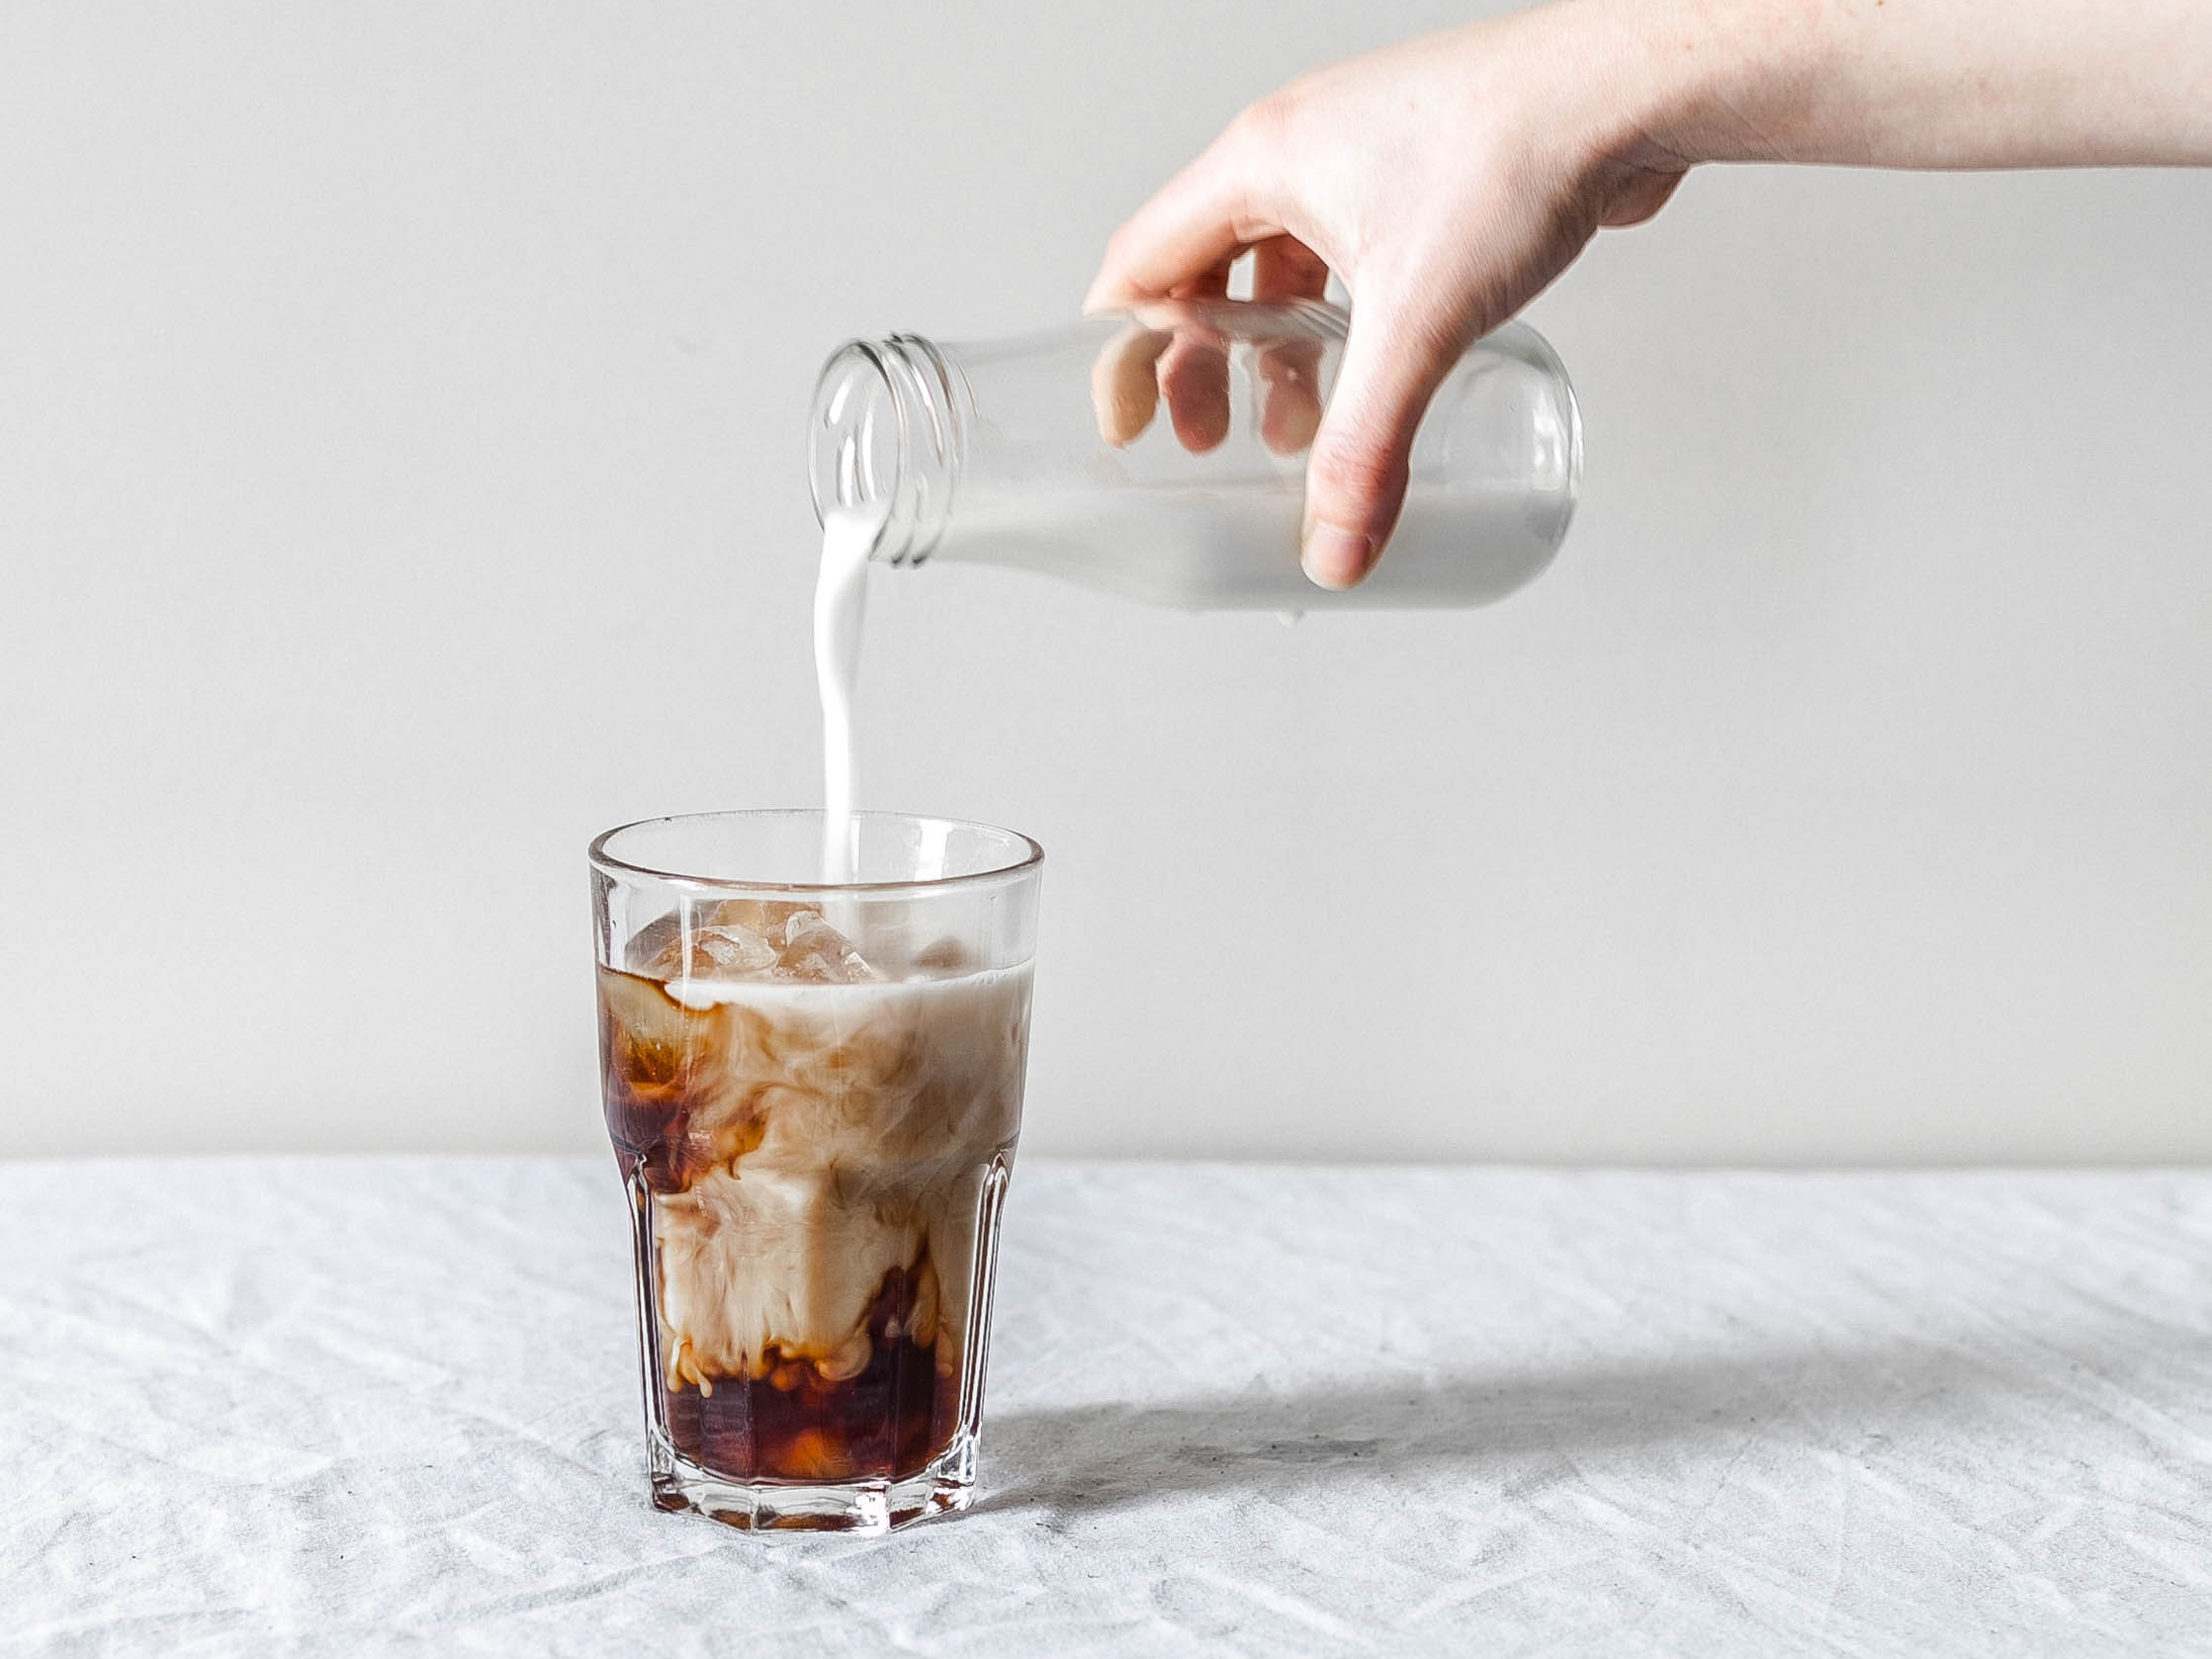 Percolator Coffee Pot Cold Boiled Iced Coffee Espresso - Temu